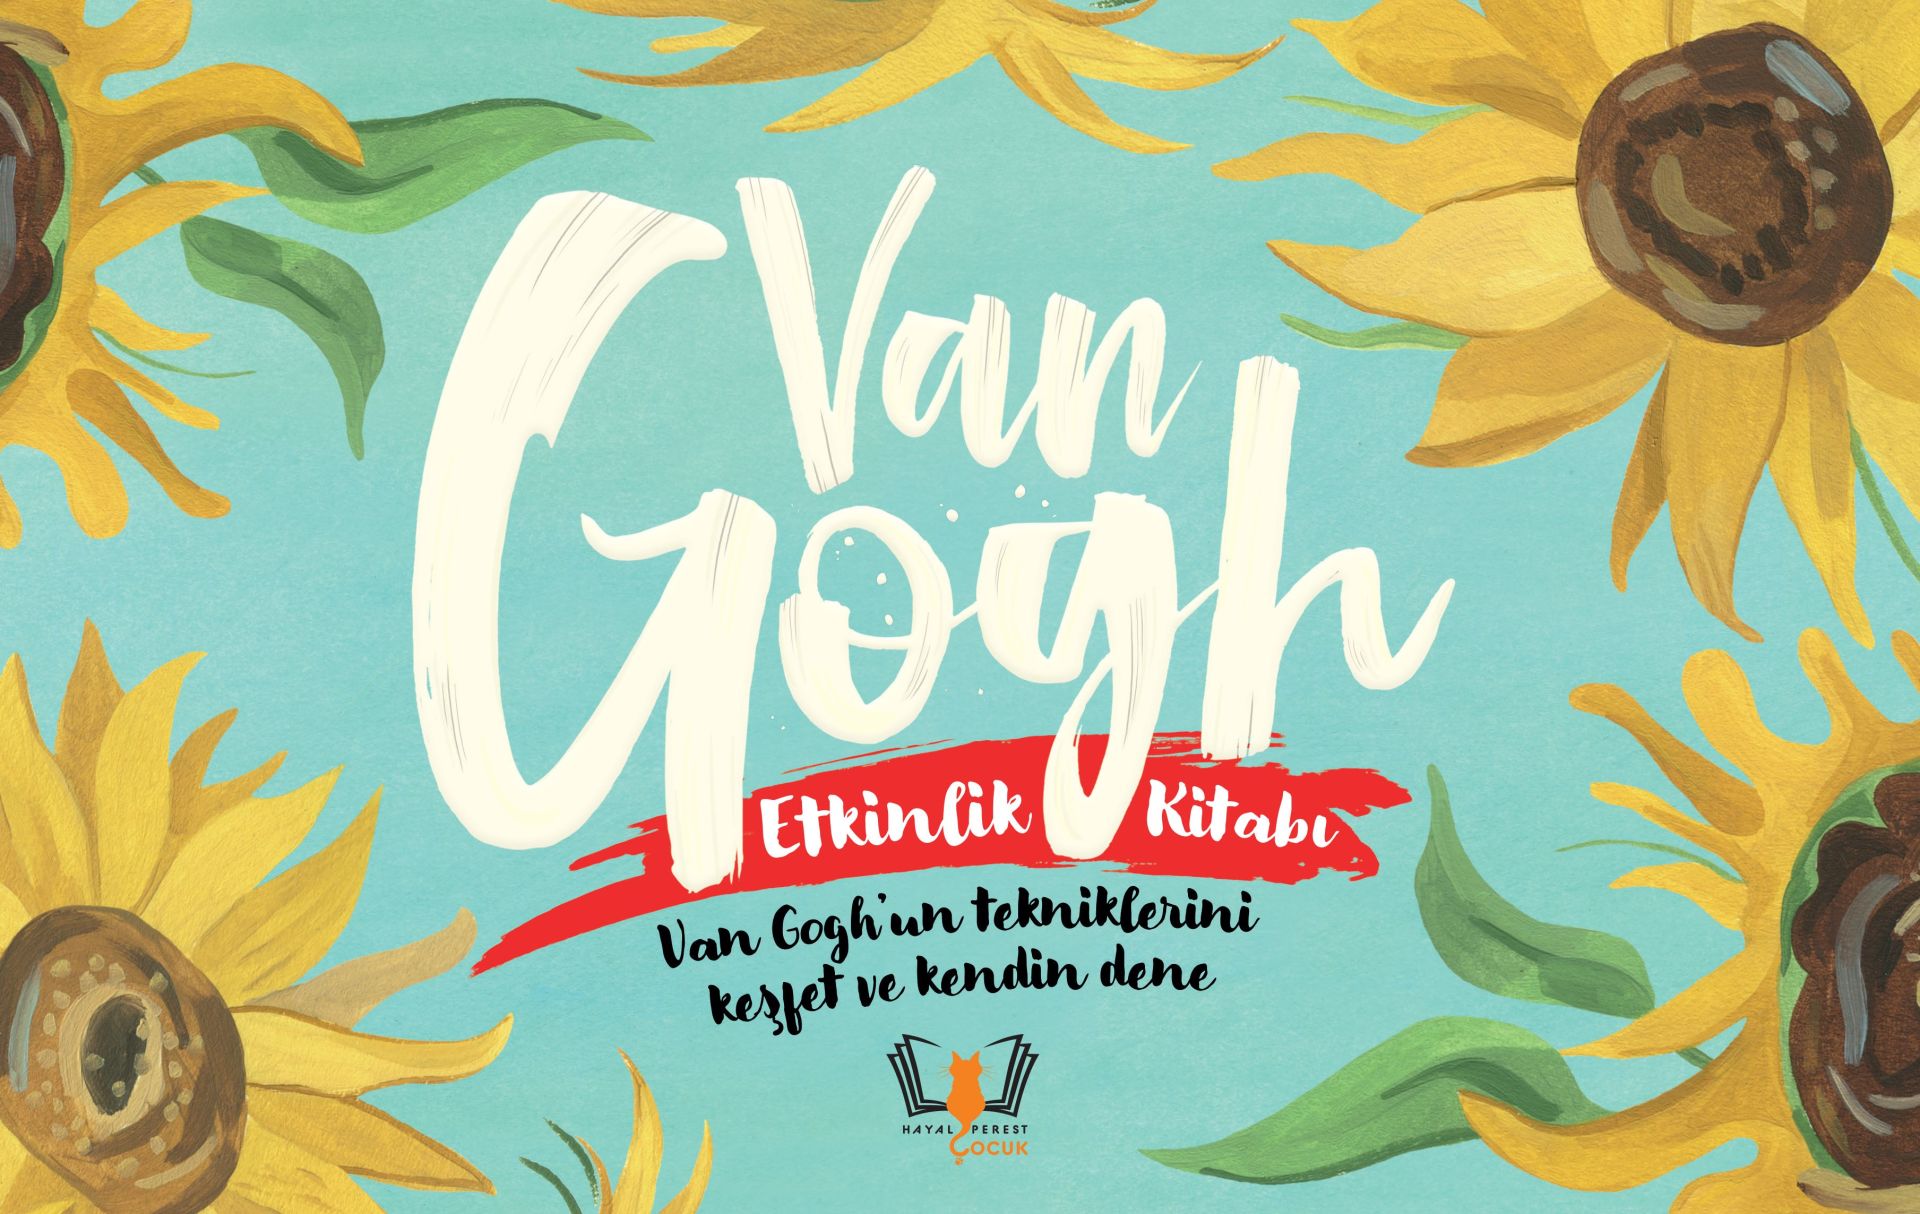 Van Gogh Etkinlik Kitabı Van Gogh’un tekniklerini keşfet ve kendin dene